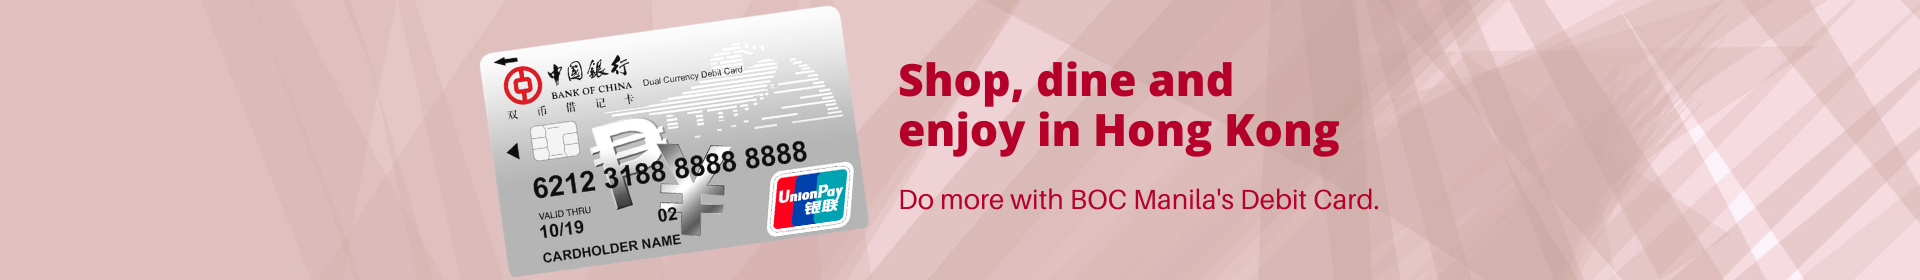 website banner desktop - BOC Debit Card